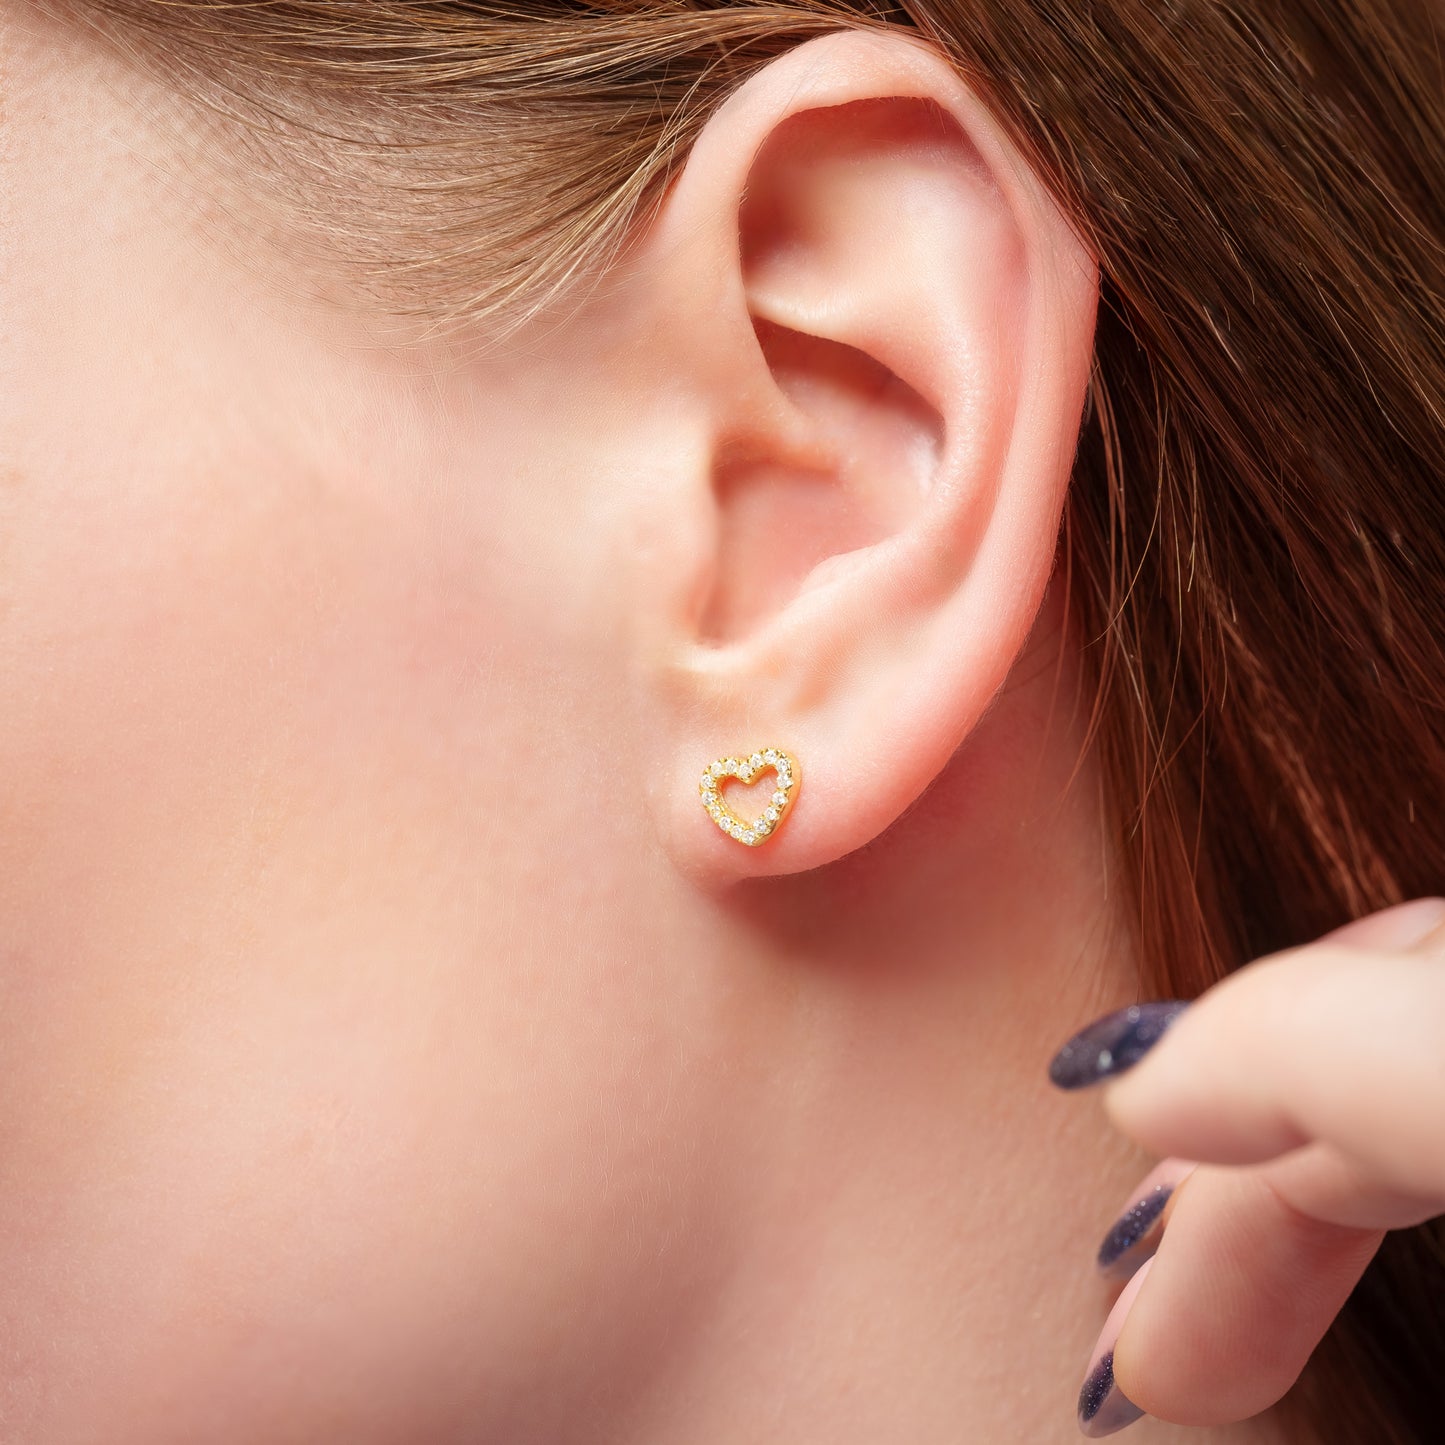 A model showing Love Heart Gold earring in her ear